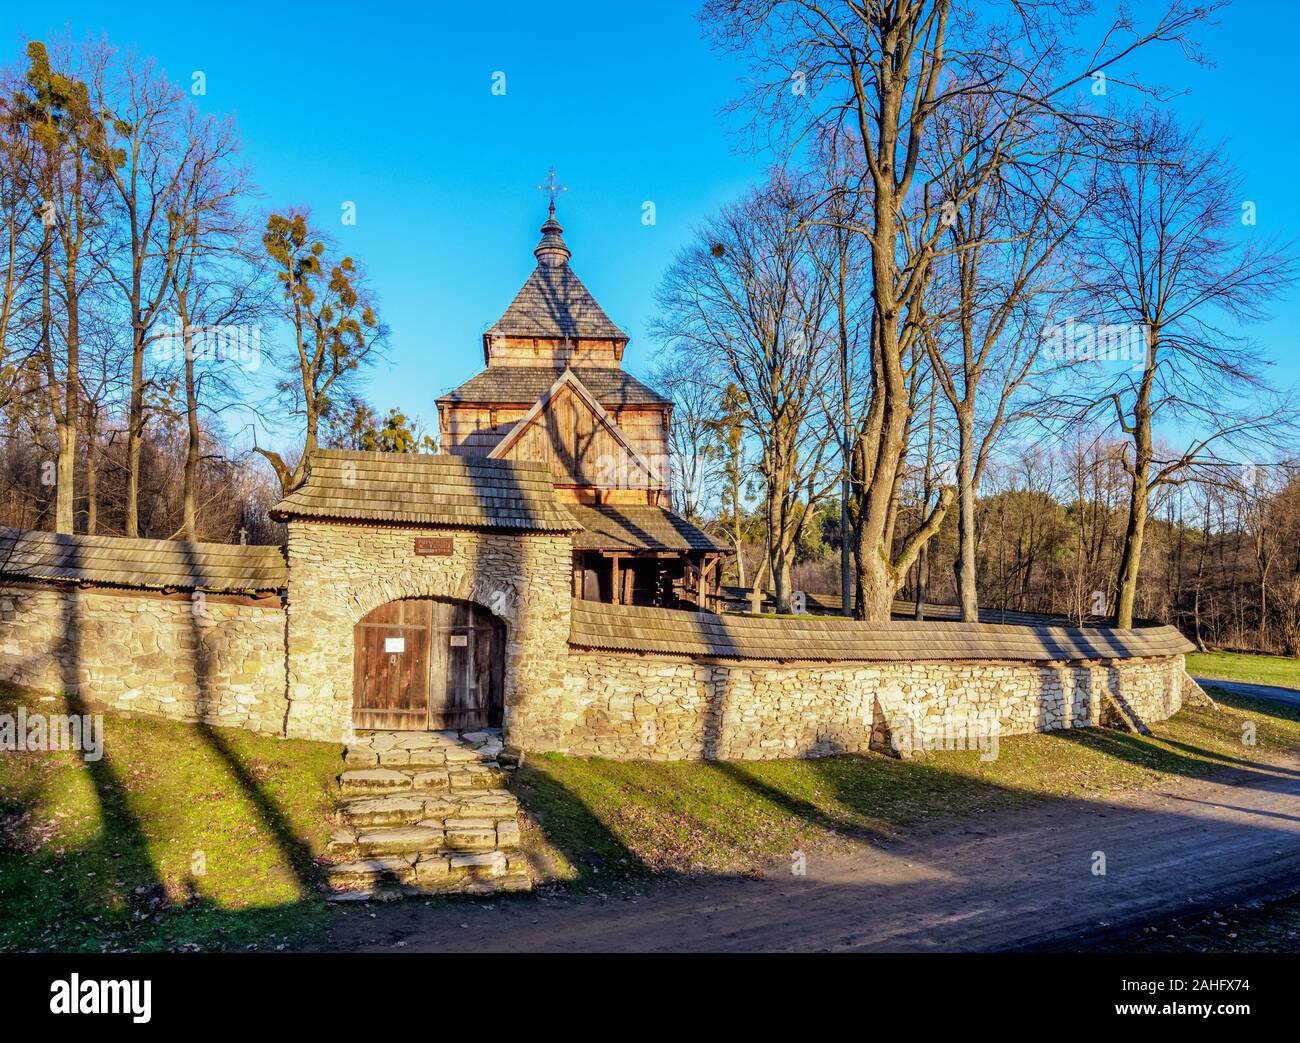 St. Paraskevi Church, UNESCO World Heritage Site, Radroz, Subcarpathian Voivodeship, Poland Stock Photo